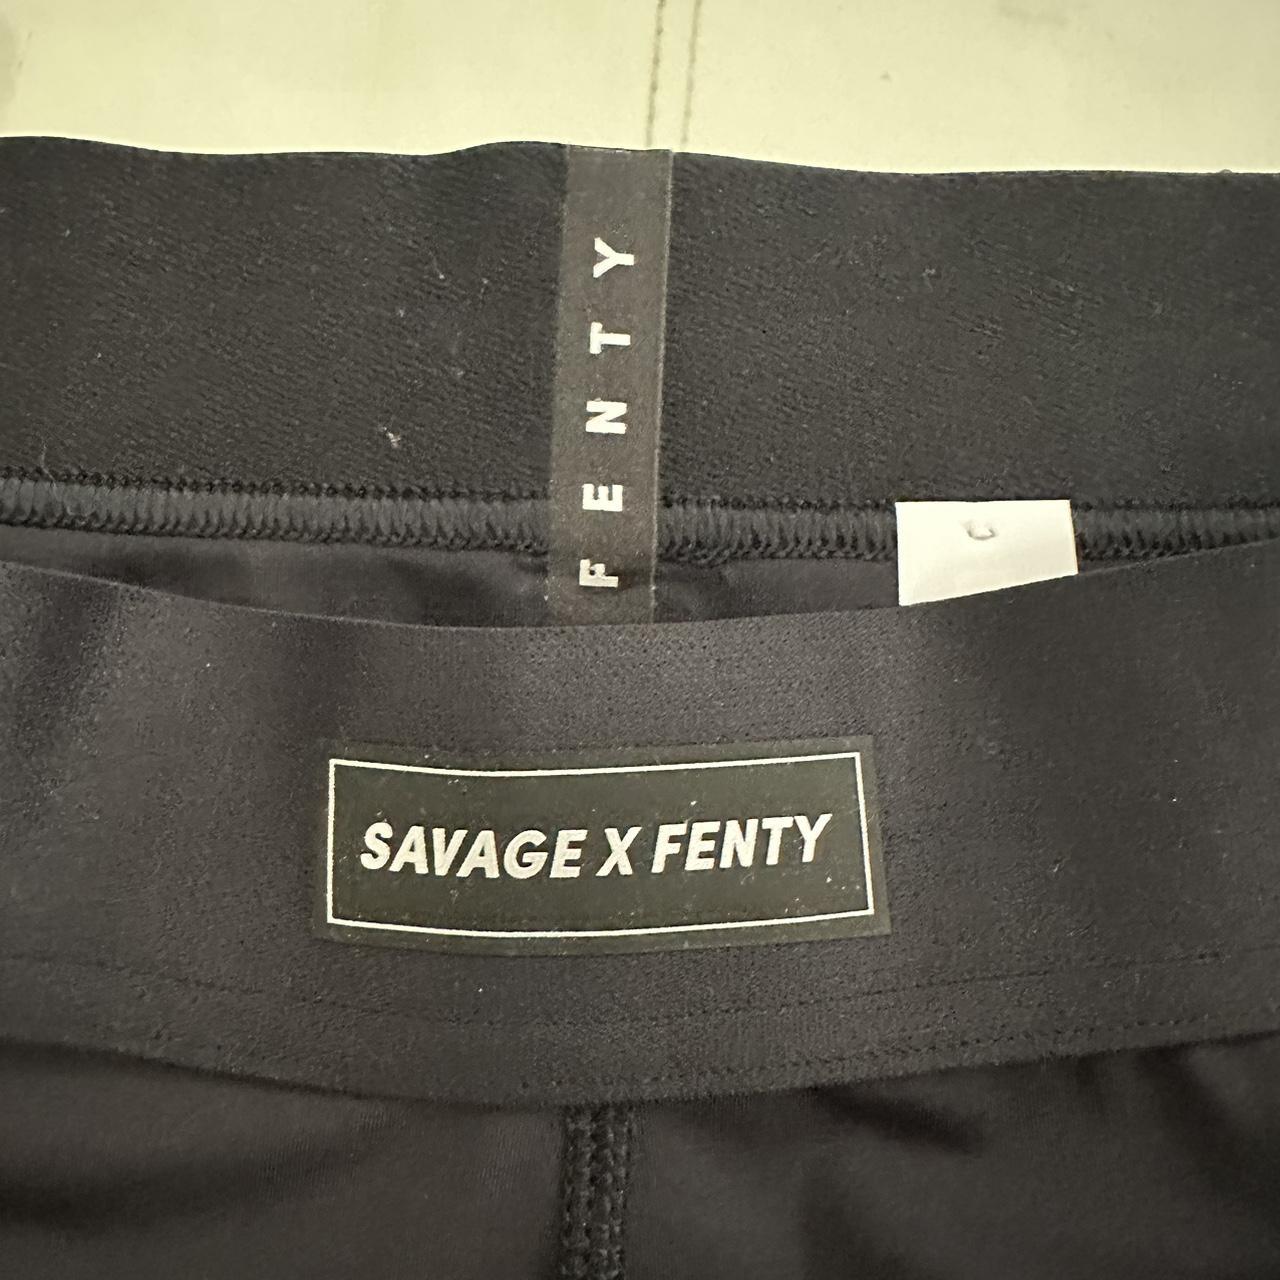 Savage X Fenty Leggins by Rihanna size XL